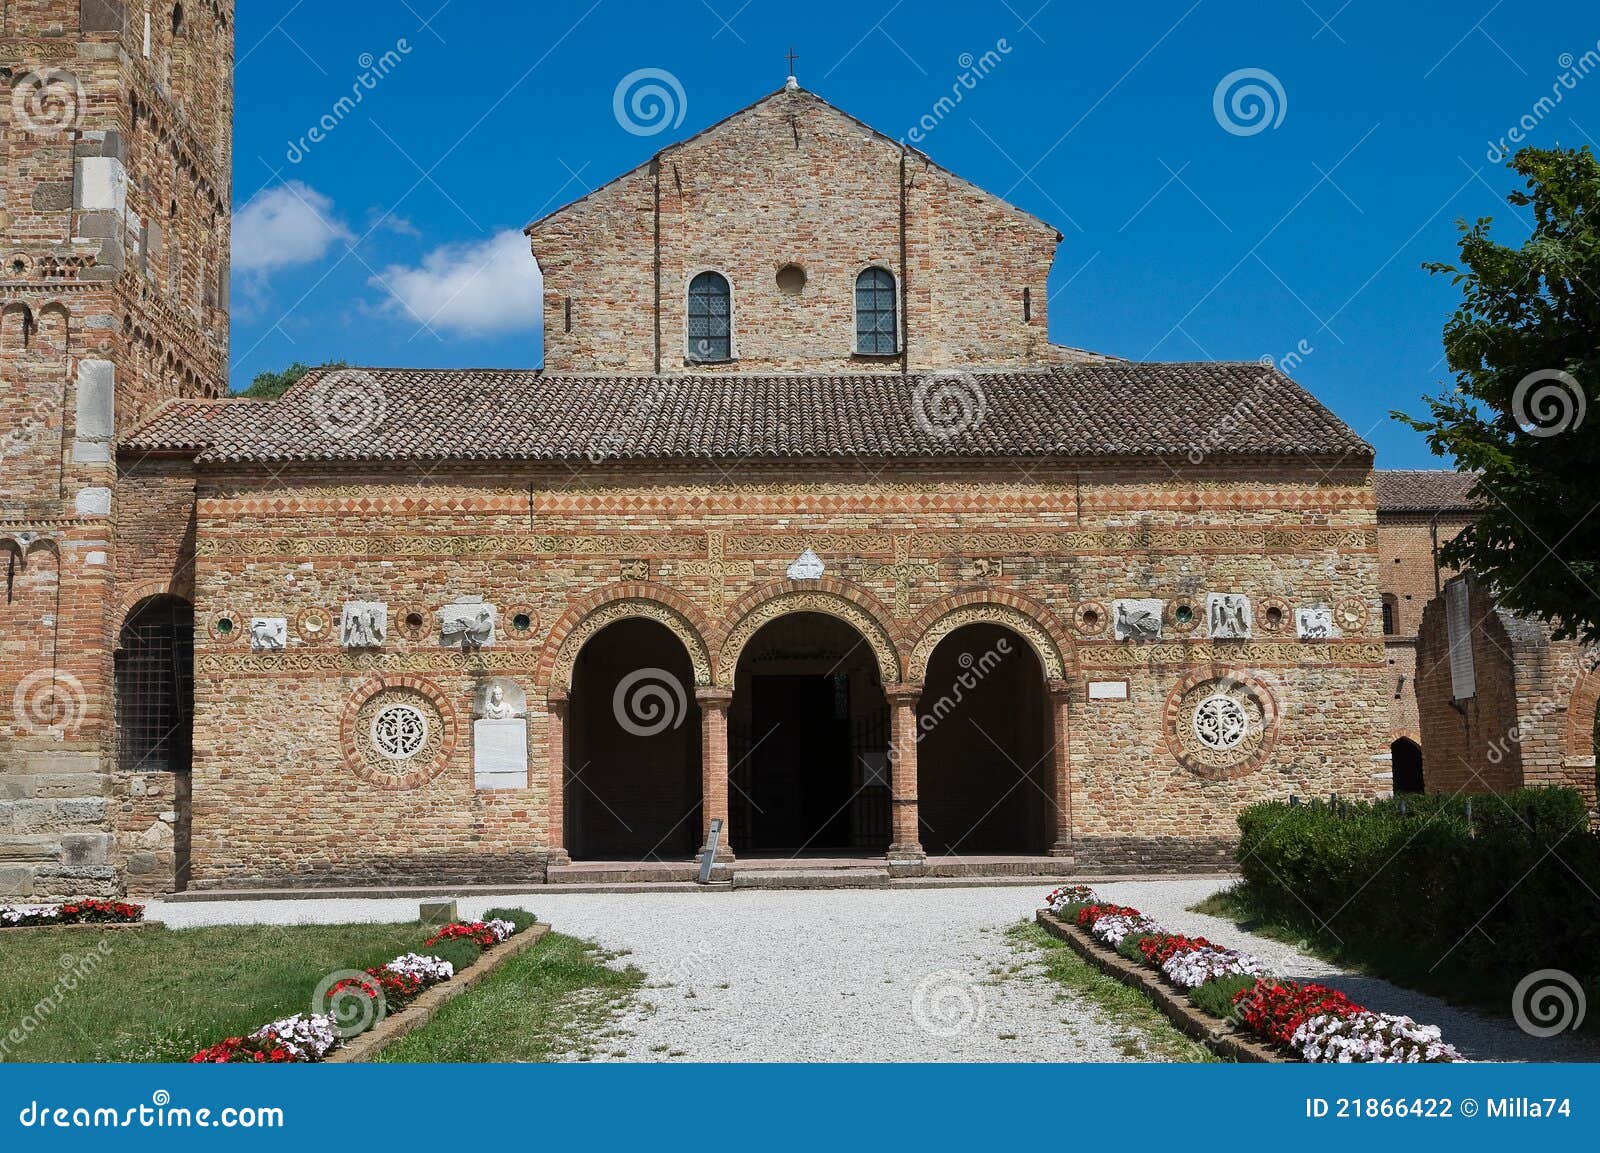 pomposa abbey. codigoro. emilia-romagna. italy.